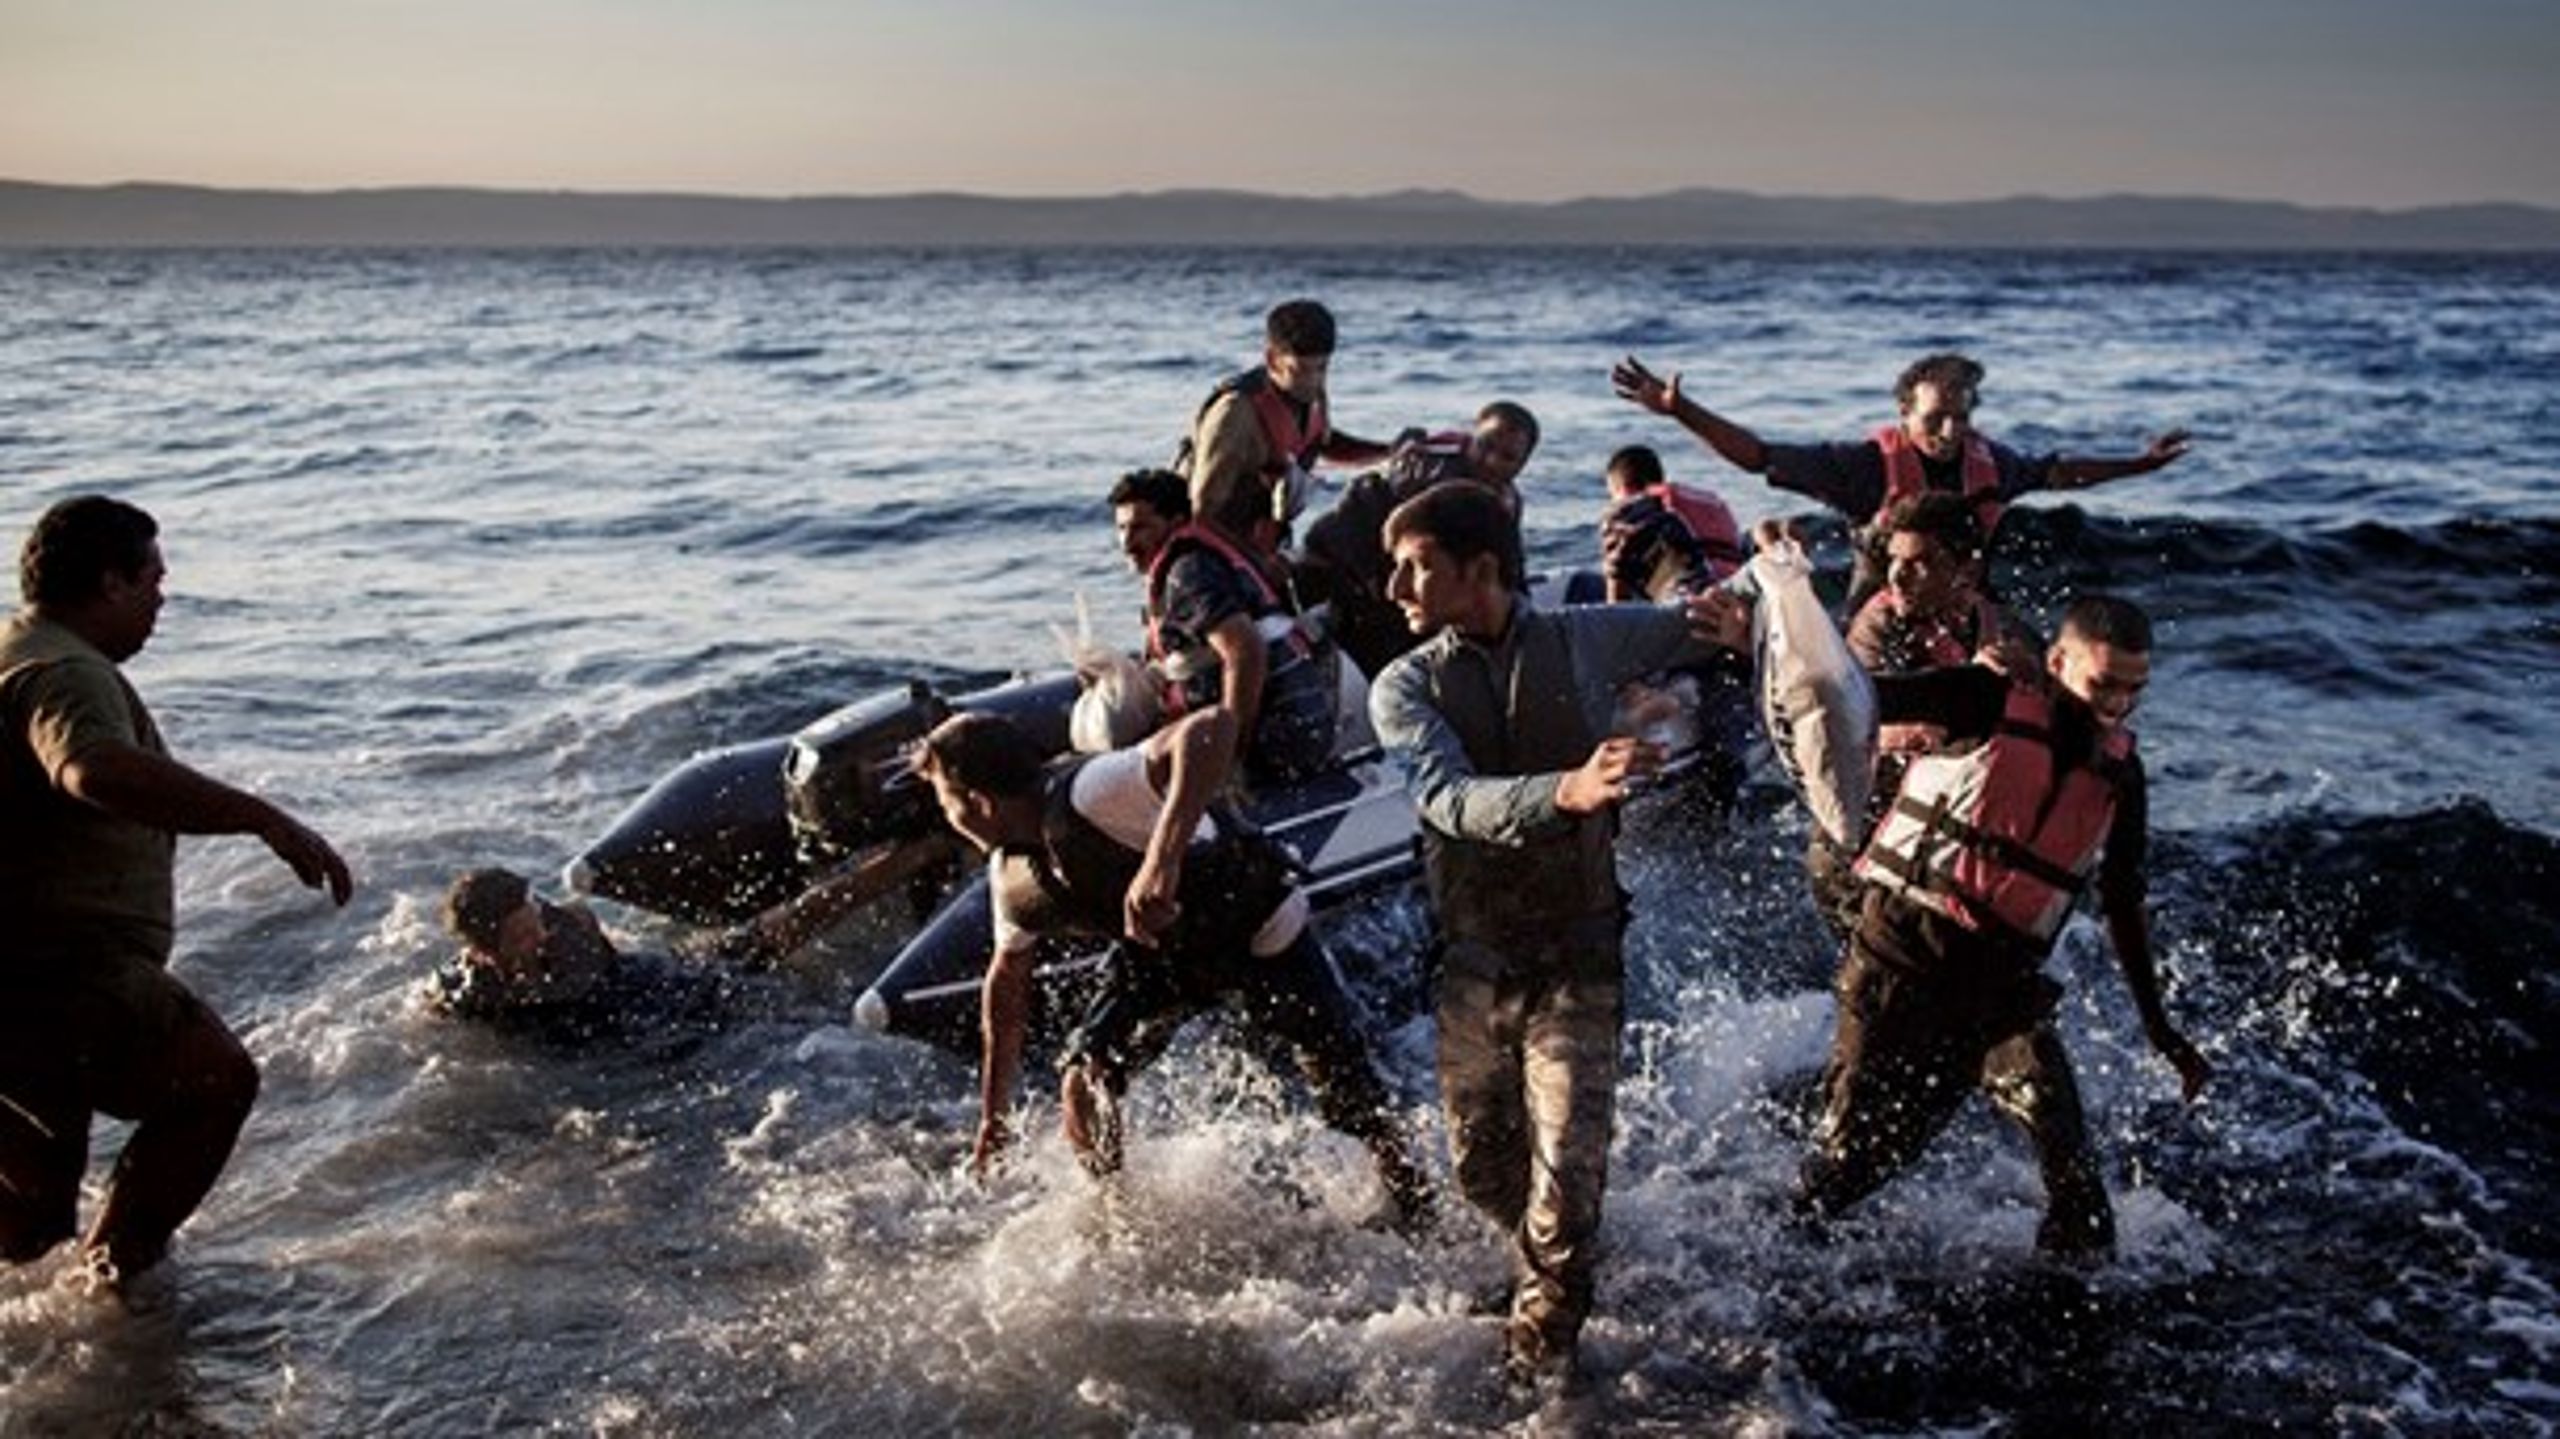 De flygtninge, der er kommet til Danmark fra Syrien, har klaret sig godt fra begyndelsen, skriver Stine Bosse.